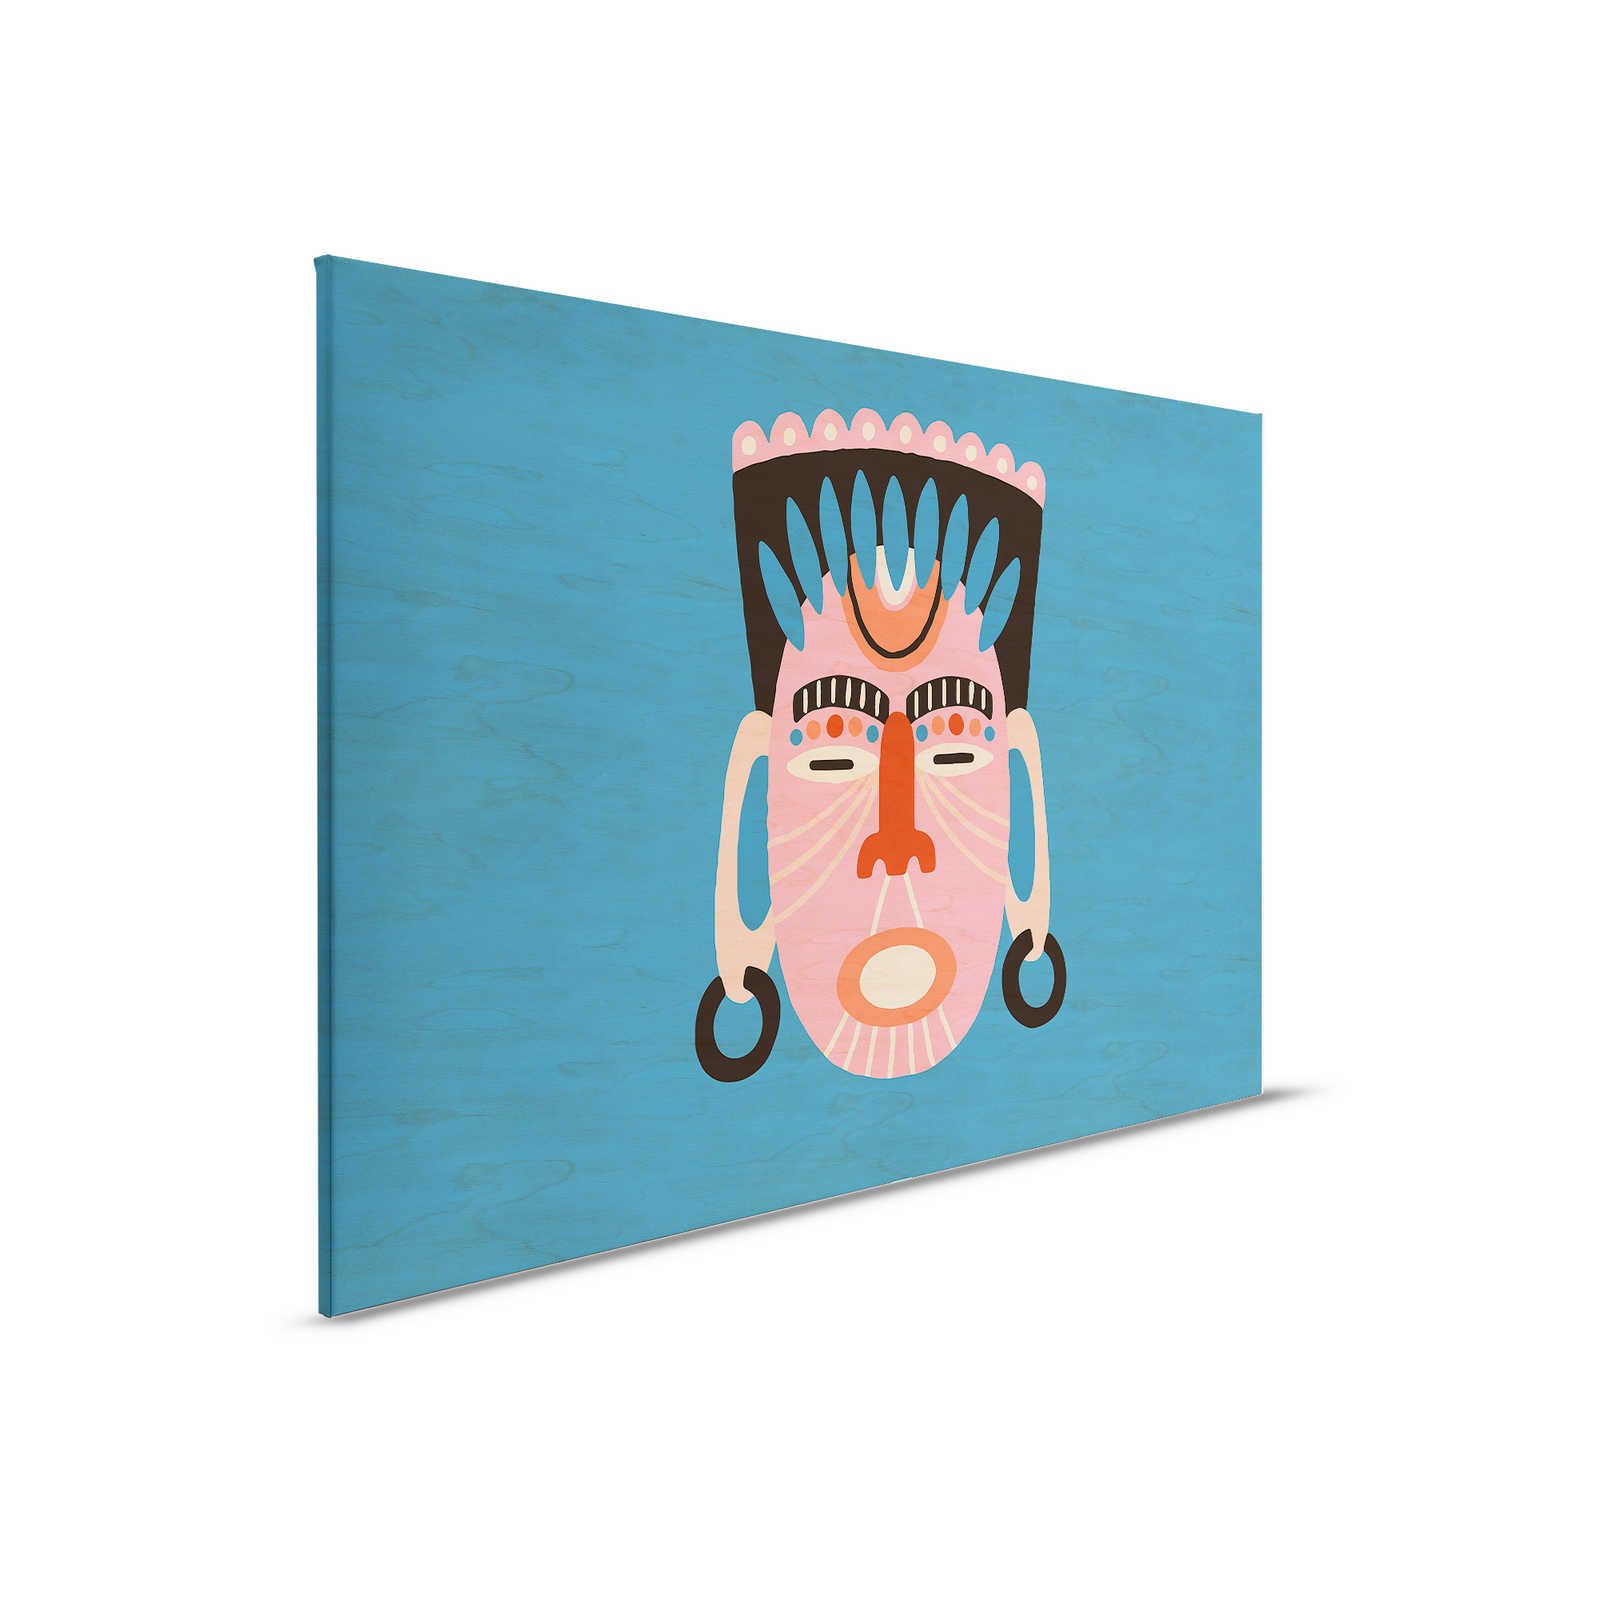         Overseas 3 - Blaues Leinwandbild Ethno Design mit Maske – 0,90 m x 0,60 m
    